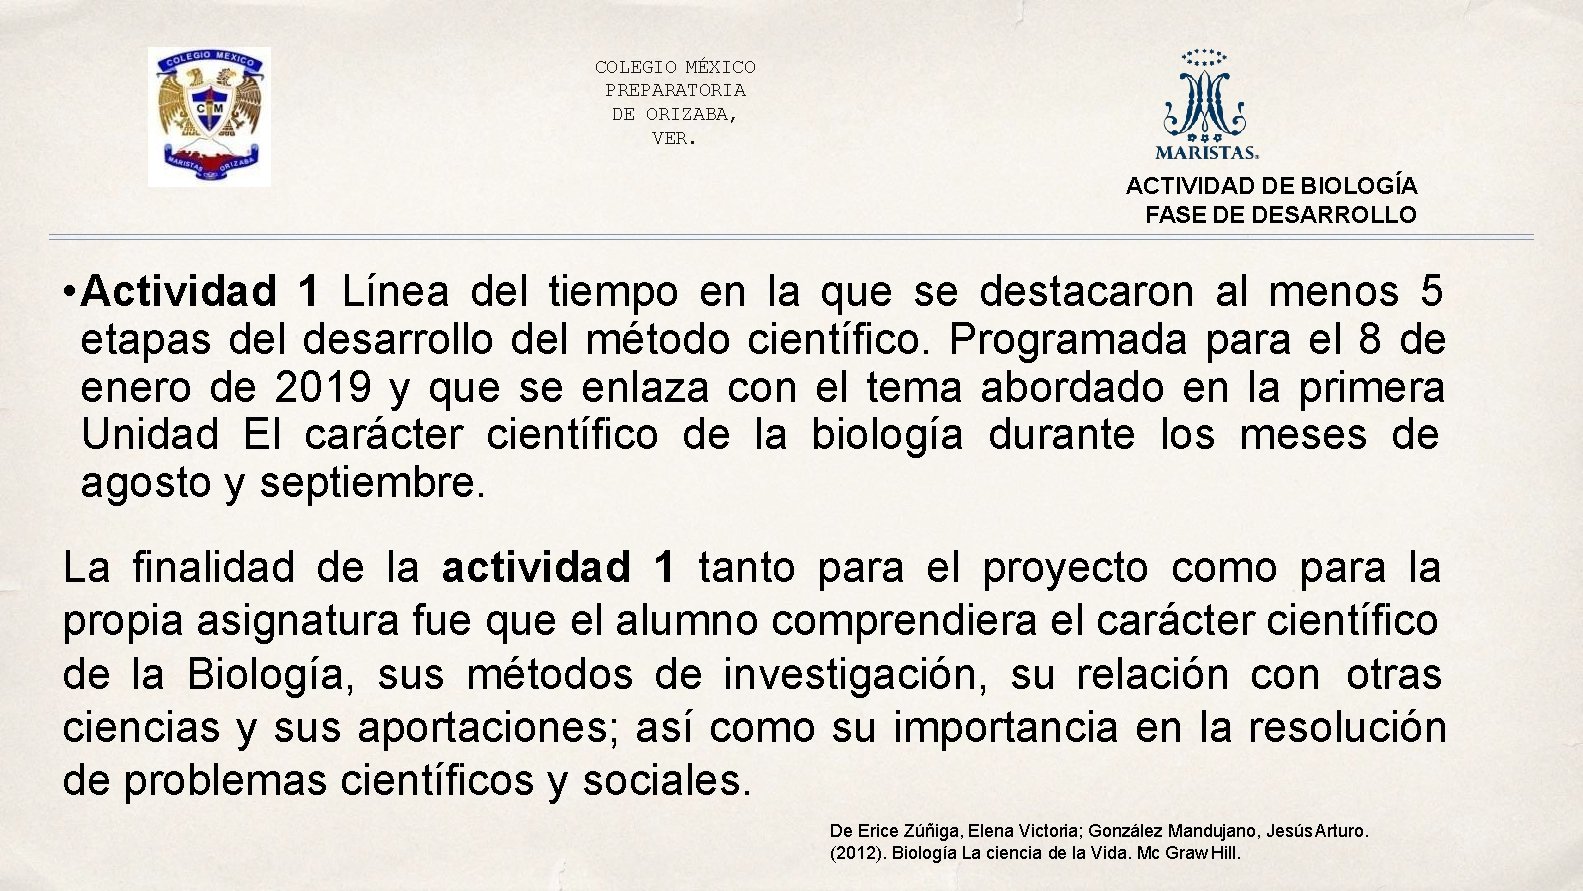 COLEGIO MÉXICO PREPARATORIA DE ORIZABA, VER. ACTIVIDAD DE BIOLOGÍA FASE DE DESARROLLO • Actividad